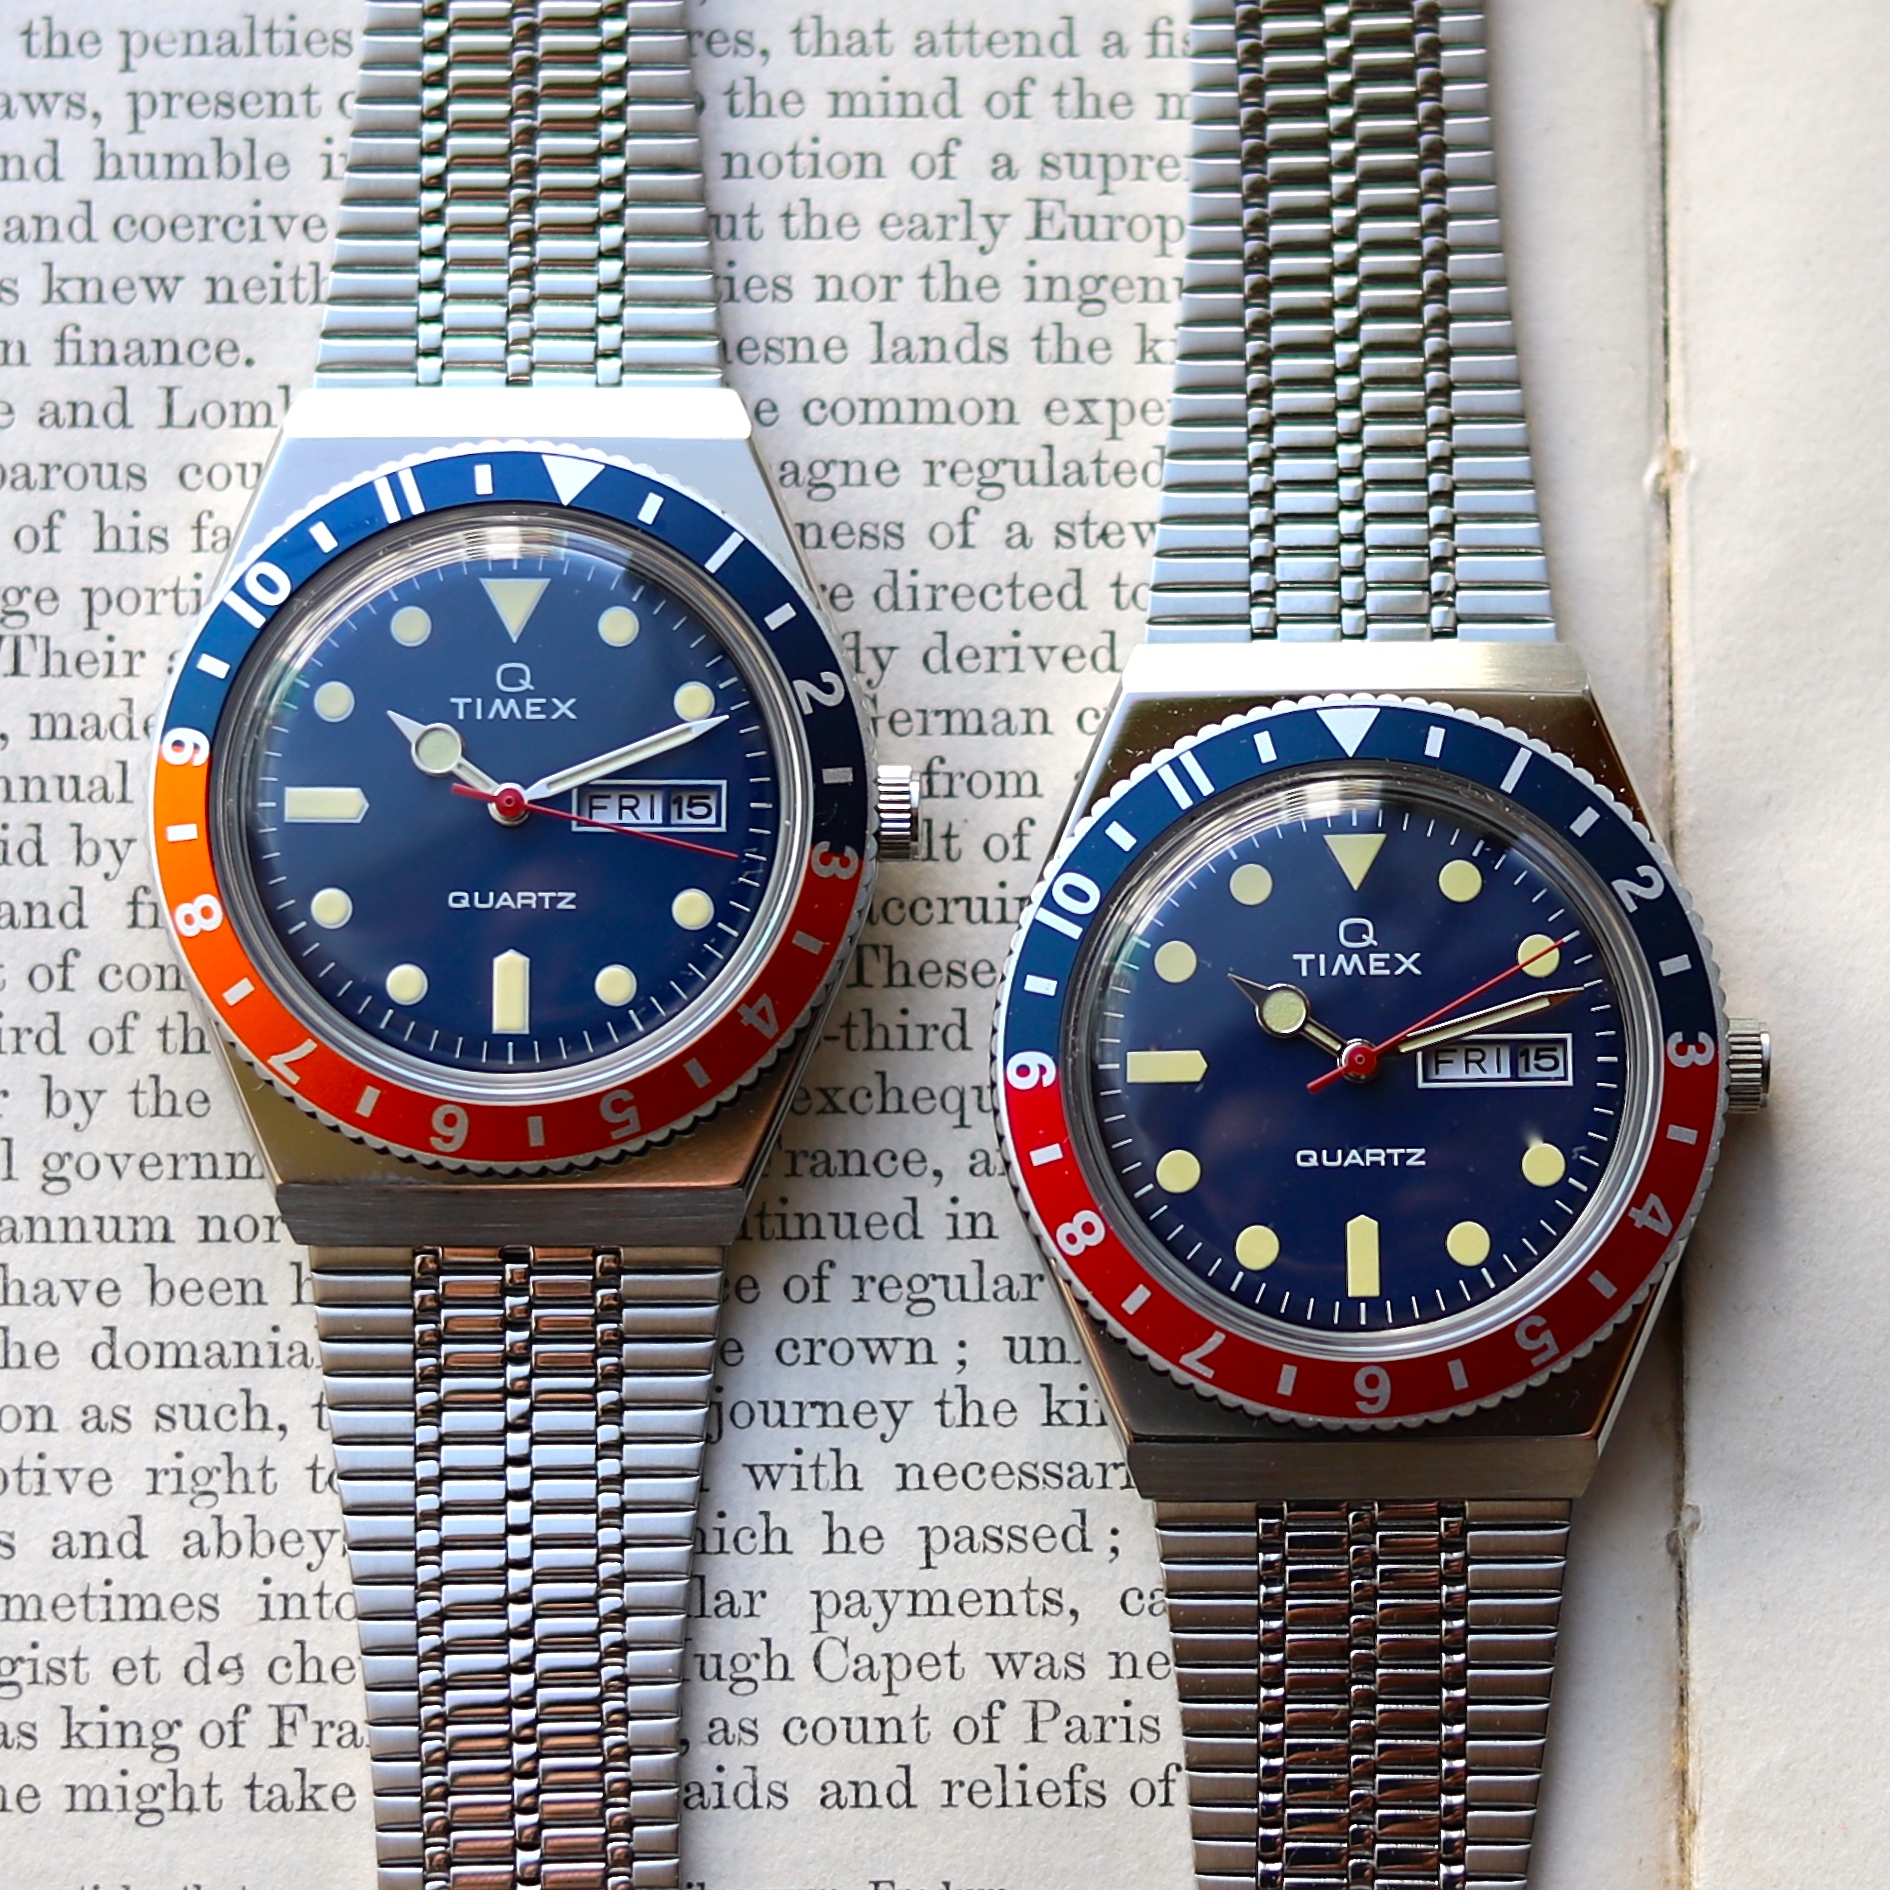 ロレックス timex Q diver chronograph 社外品ベルト付き - 時計